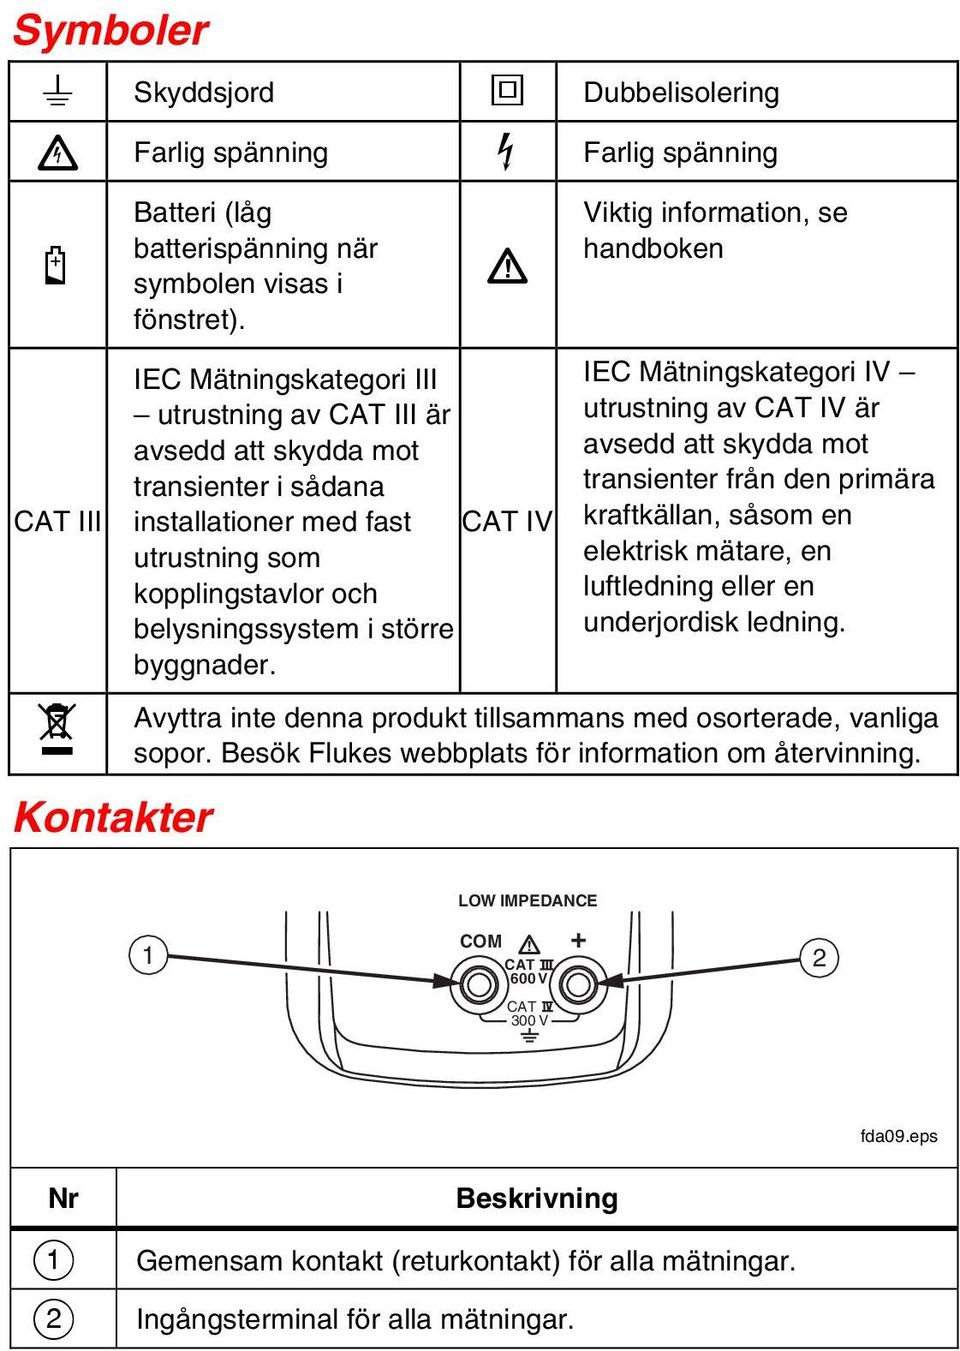 Viktig information, se handboken IEC Mätningskategori IV utrustning av CAT IV är avsedd att skydda mot transienter från den primära kraftkällan, såsom en elektrisk mätare, en luftledning eller en